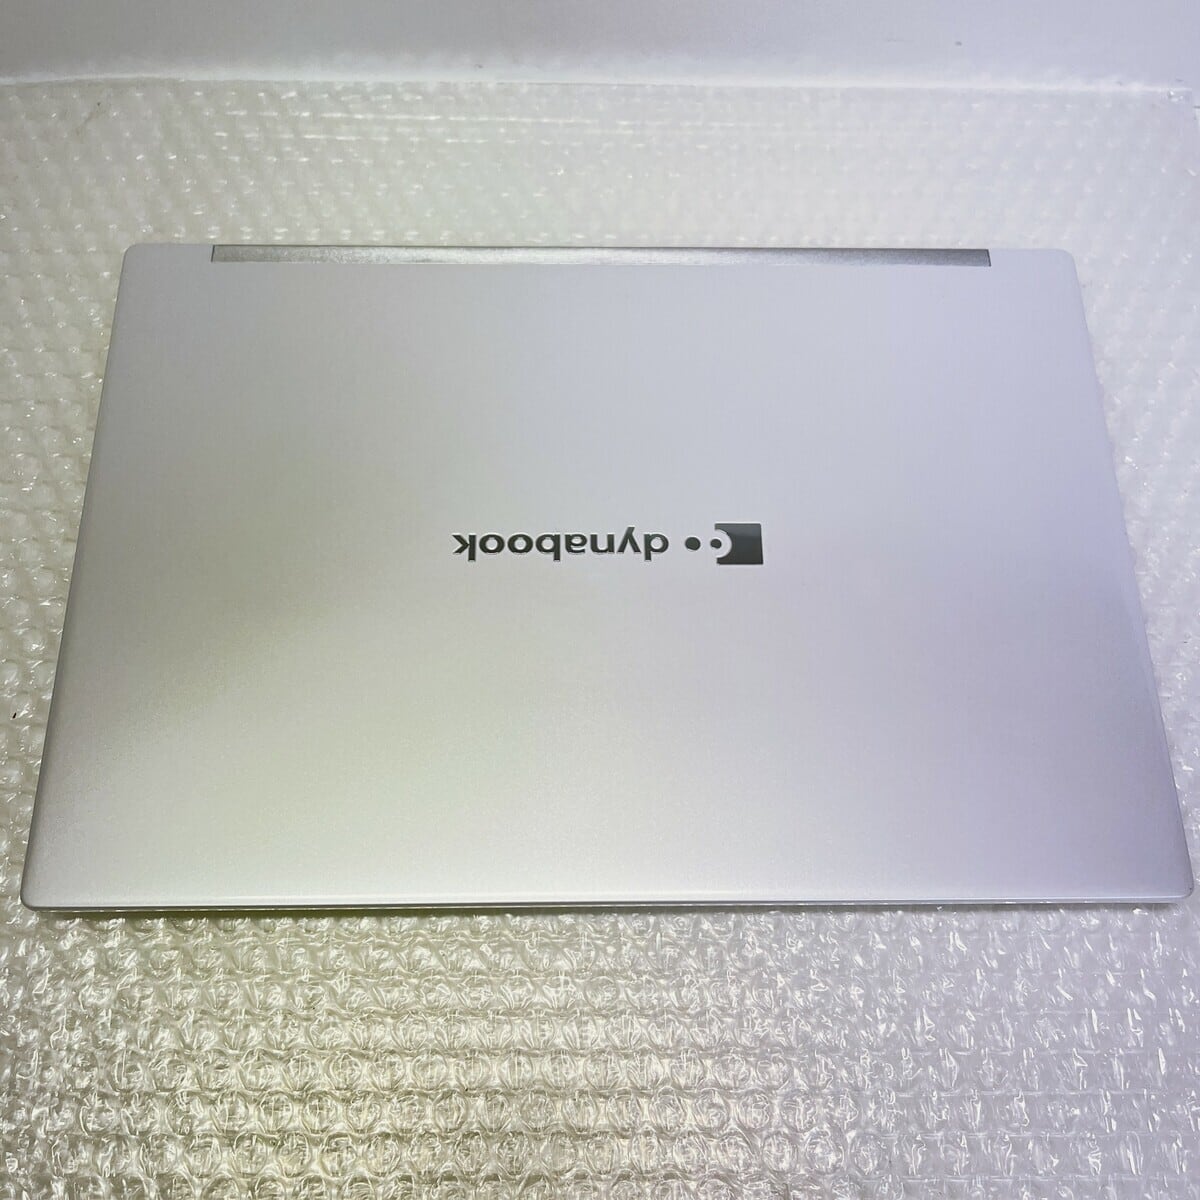 dynabook GZ/HPW Core i5 SSD256GB メモリ8GB